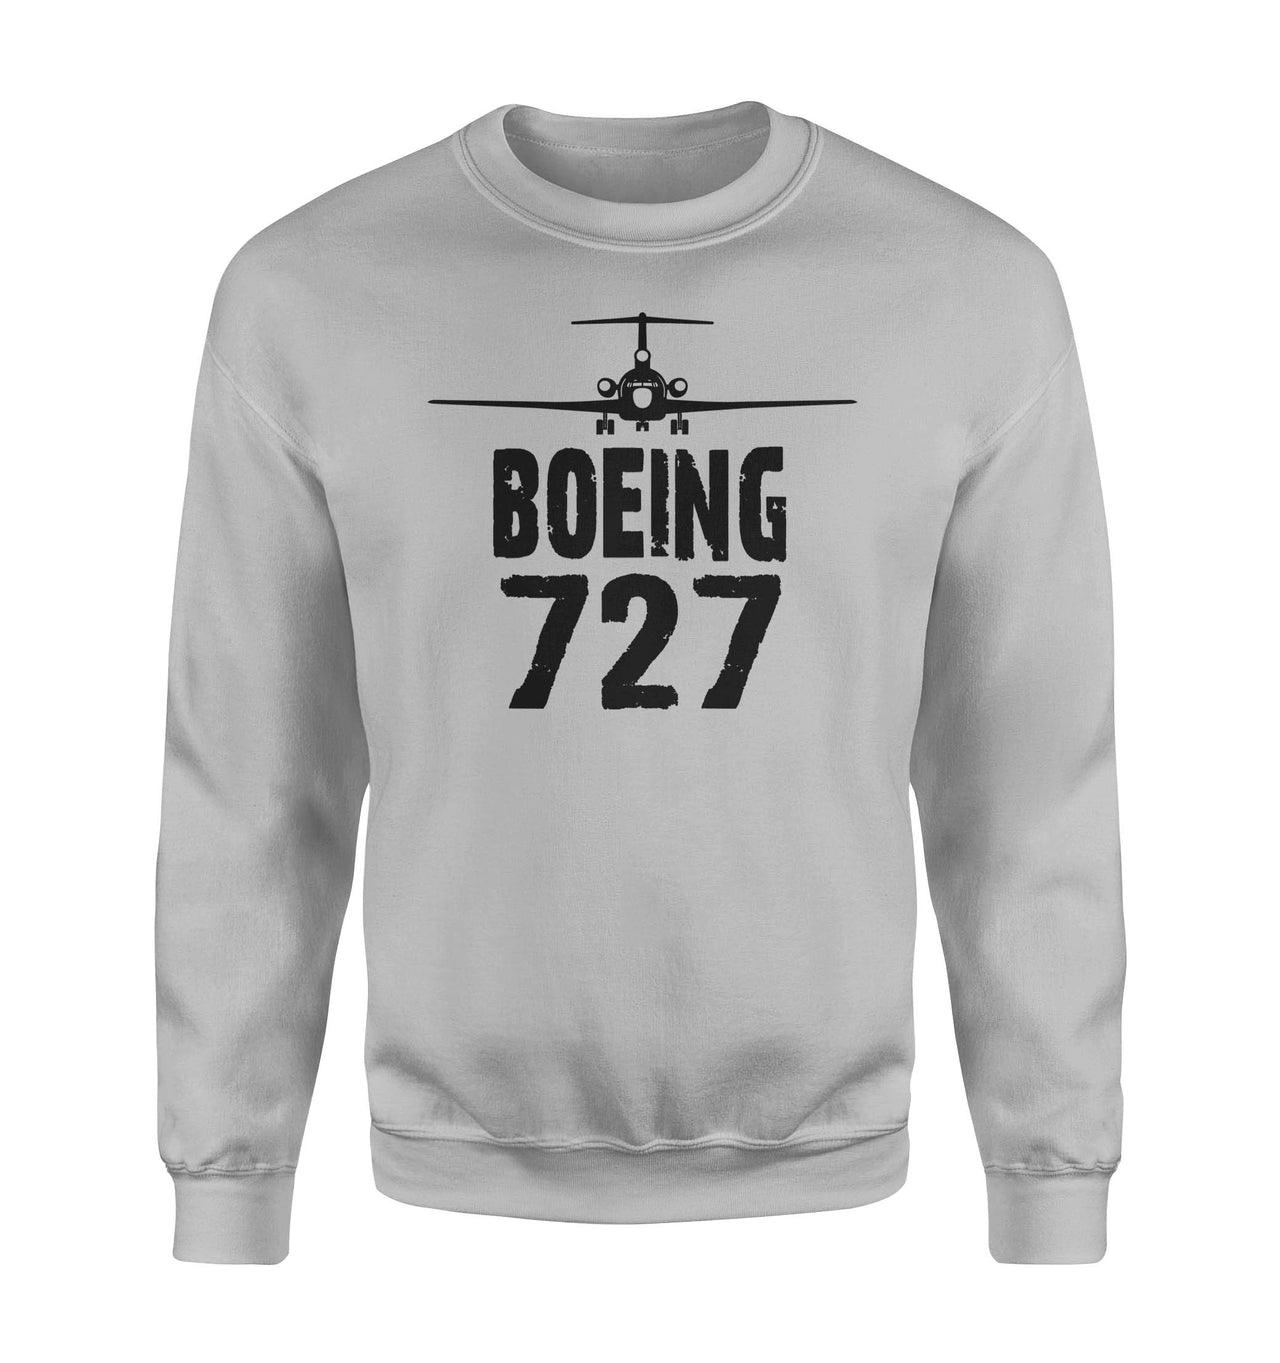 Boeing 727 & Plane Designed Sweatshirts